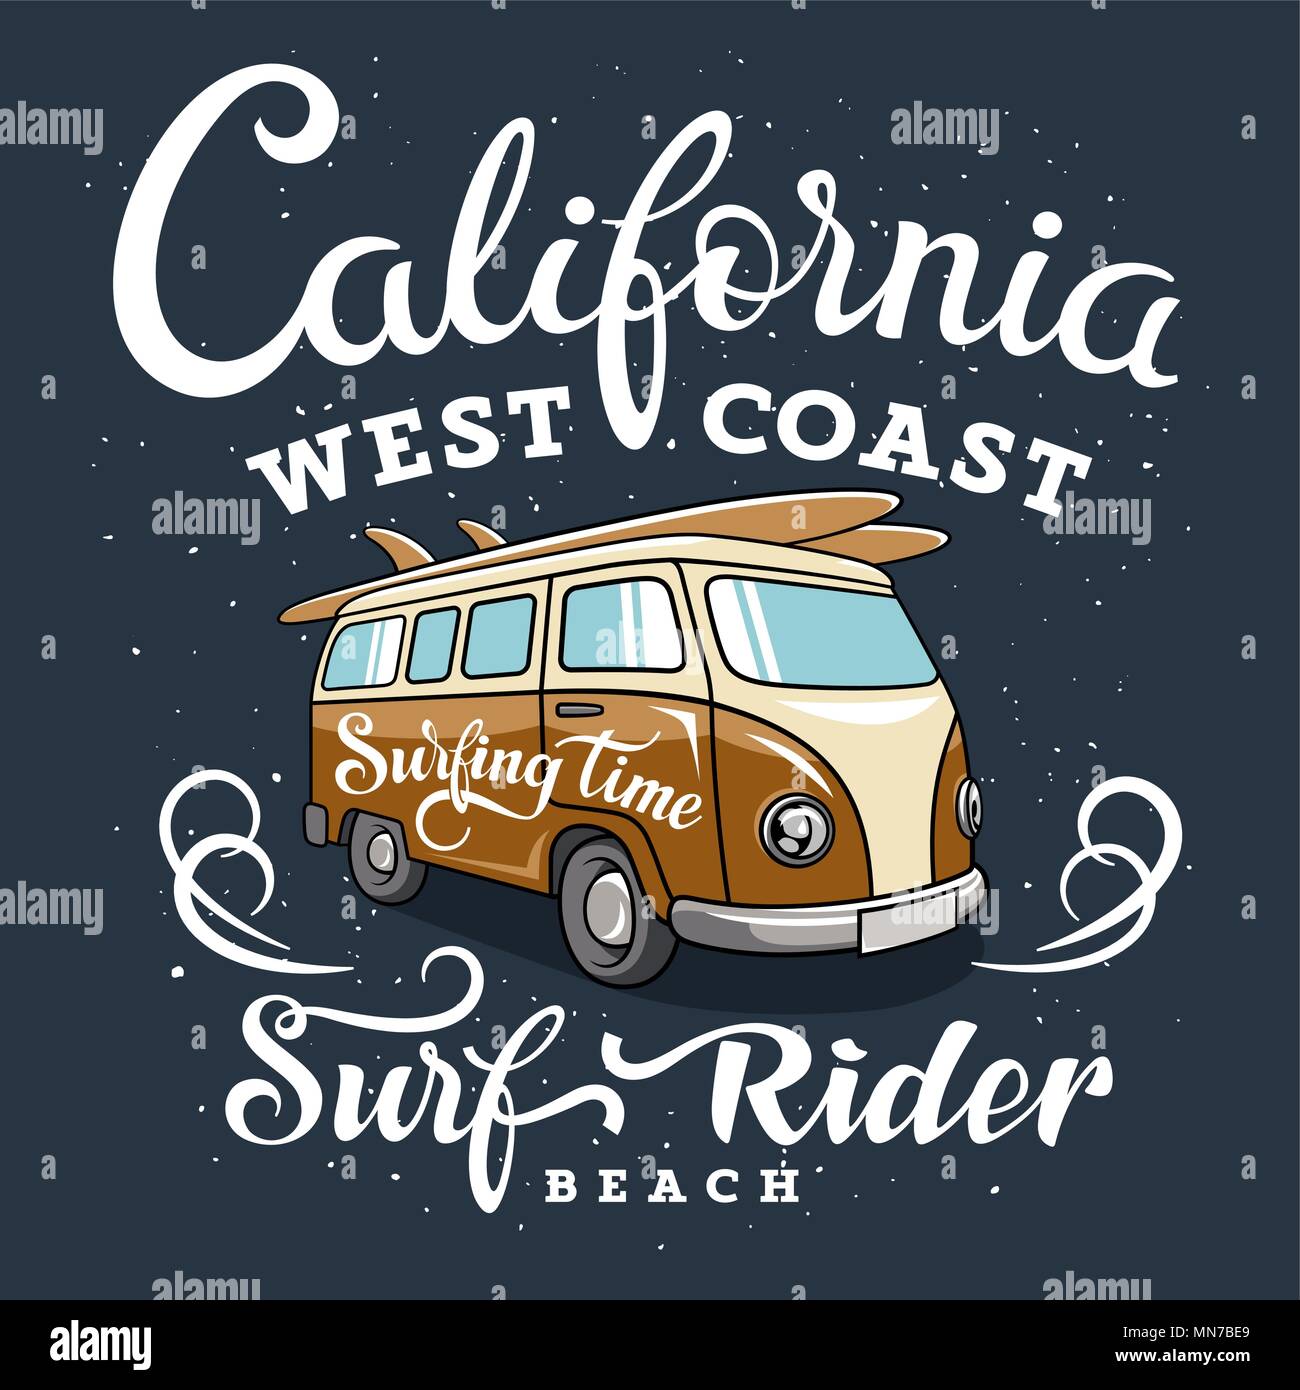 Surfen Artwork mit einem Hippie van. Kalifornien Westküste. Surfrider Beach. T-shirt Bekleidung Grafiken drucken. Original Graphic Tee Stock Vektor